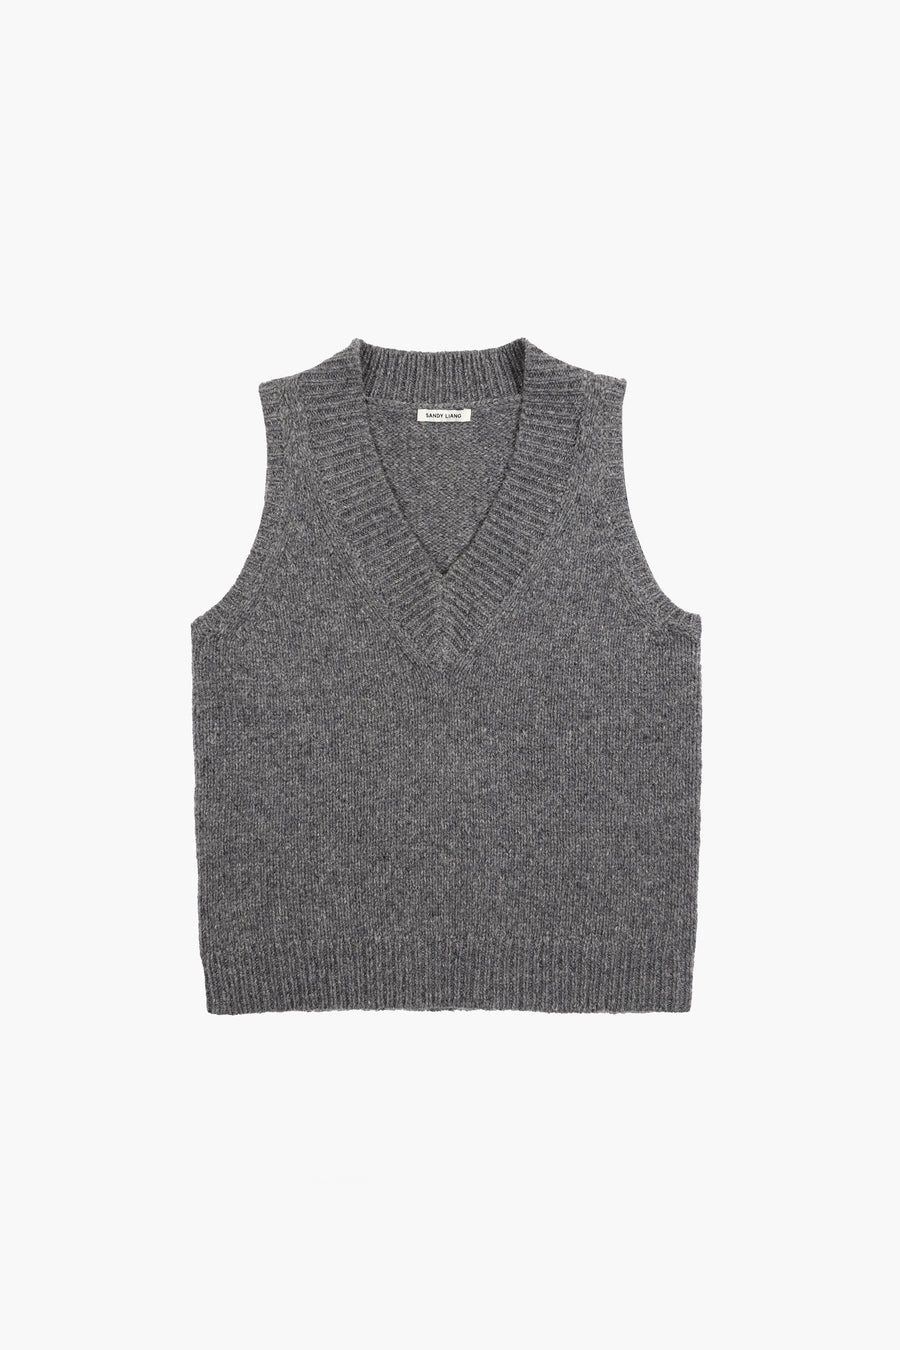 V neck sweater vest in grey